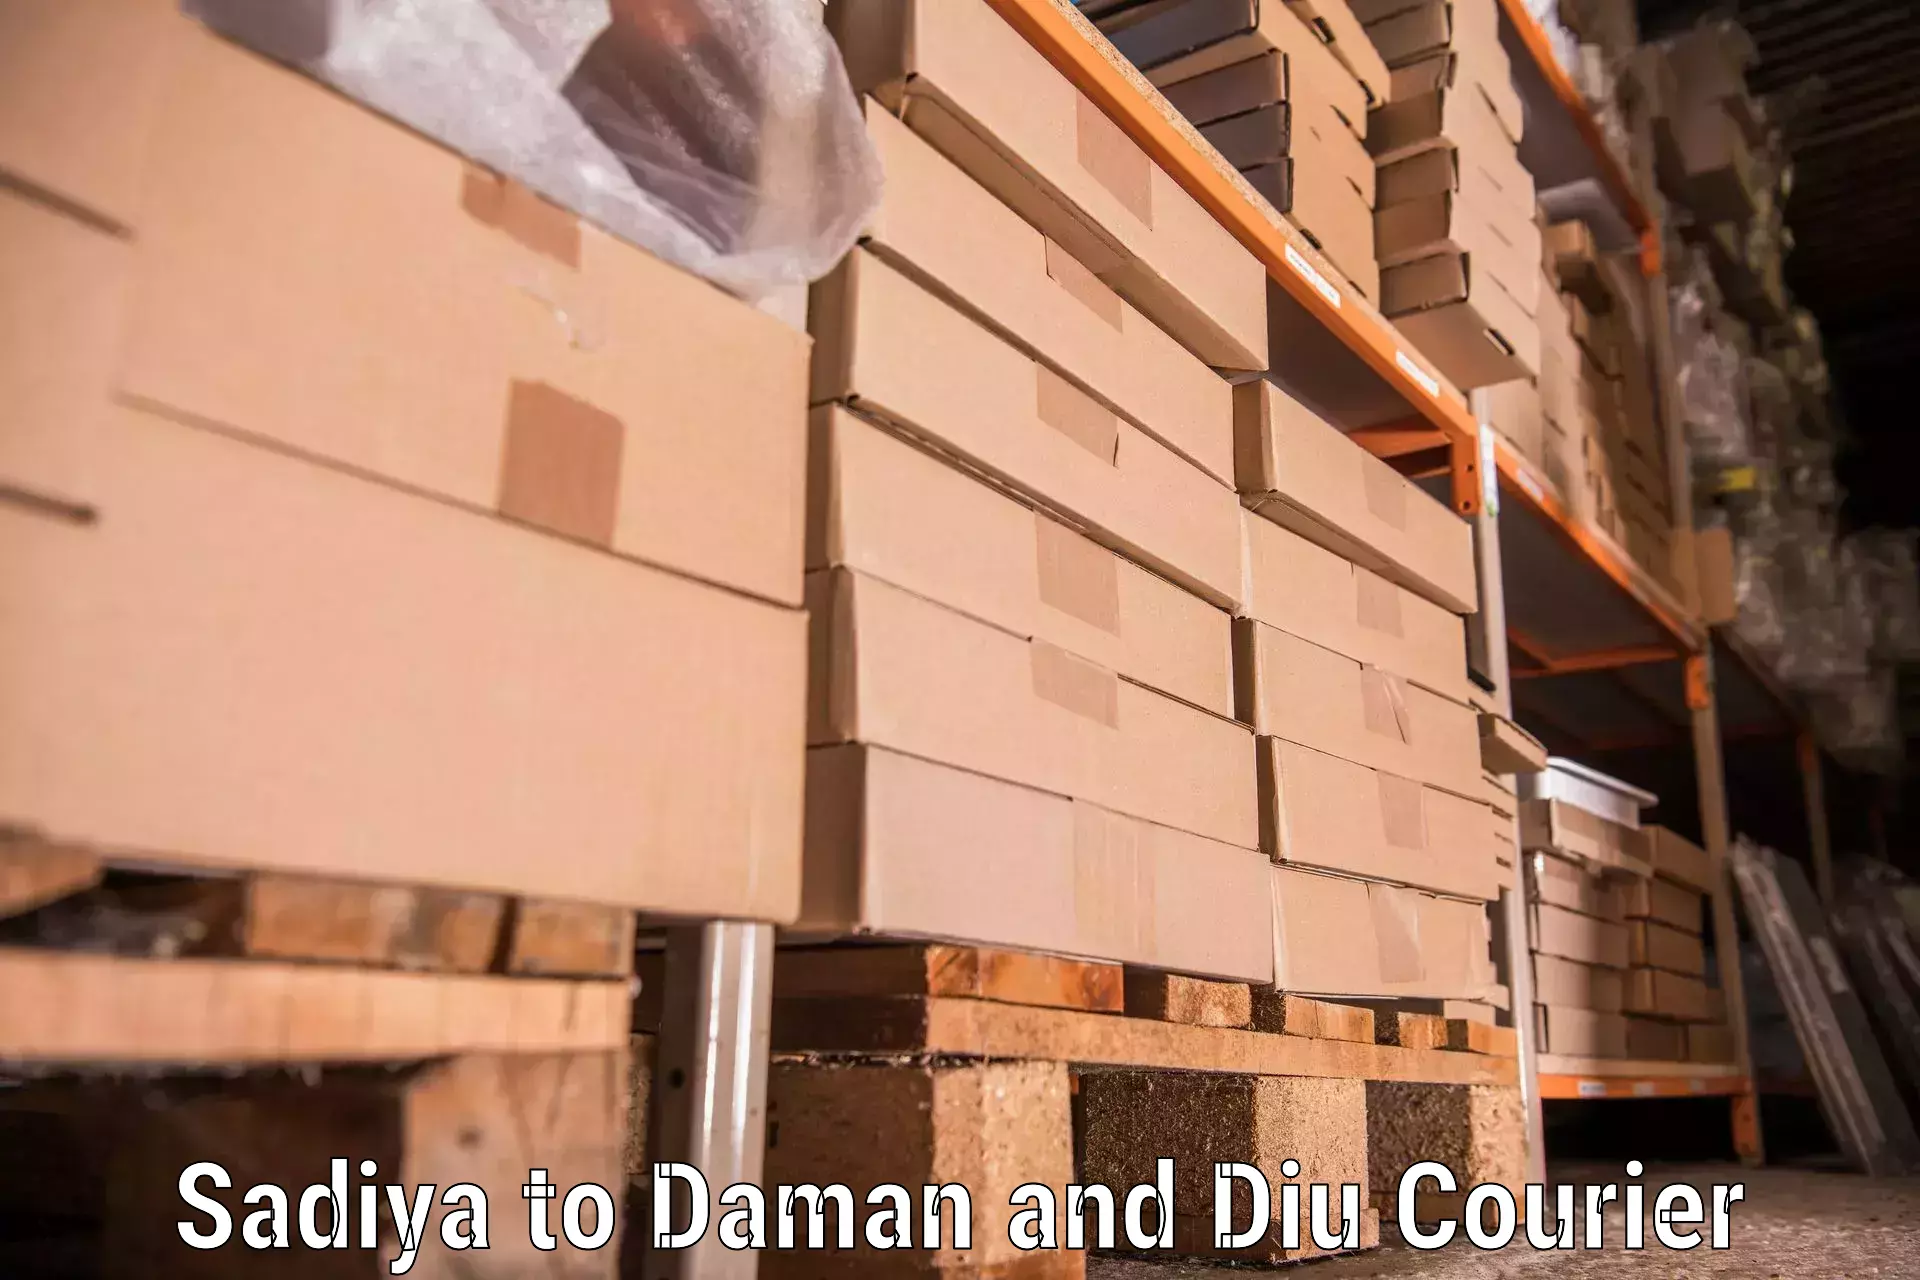 Furniture transport solutions Sadiya to Daman and Diu